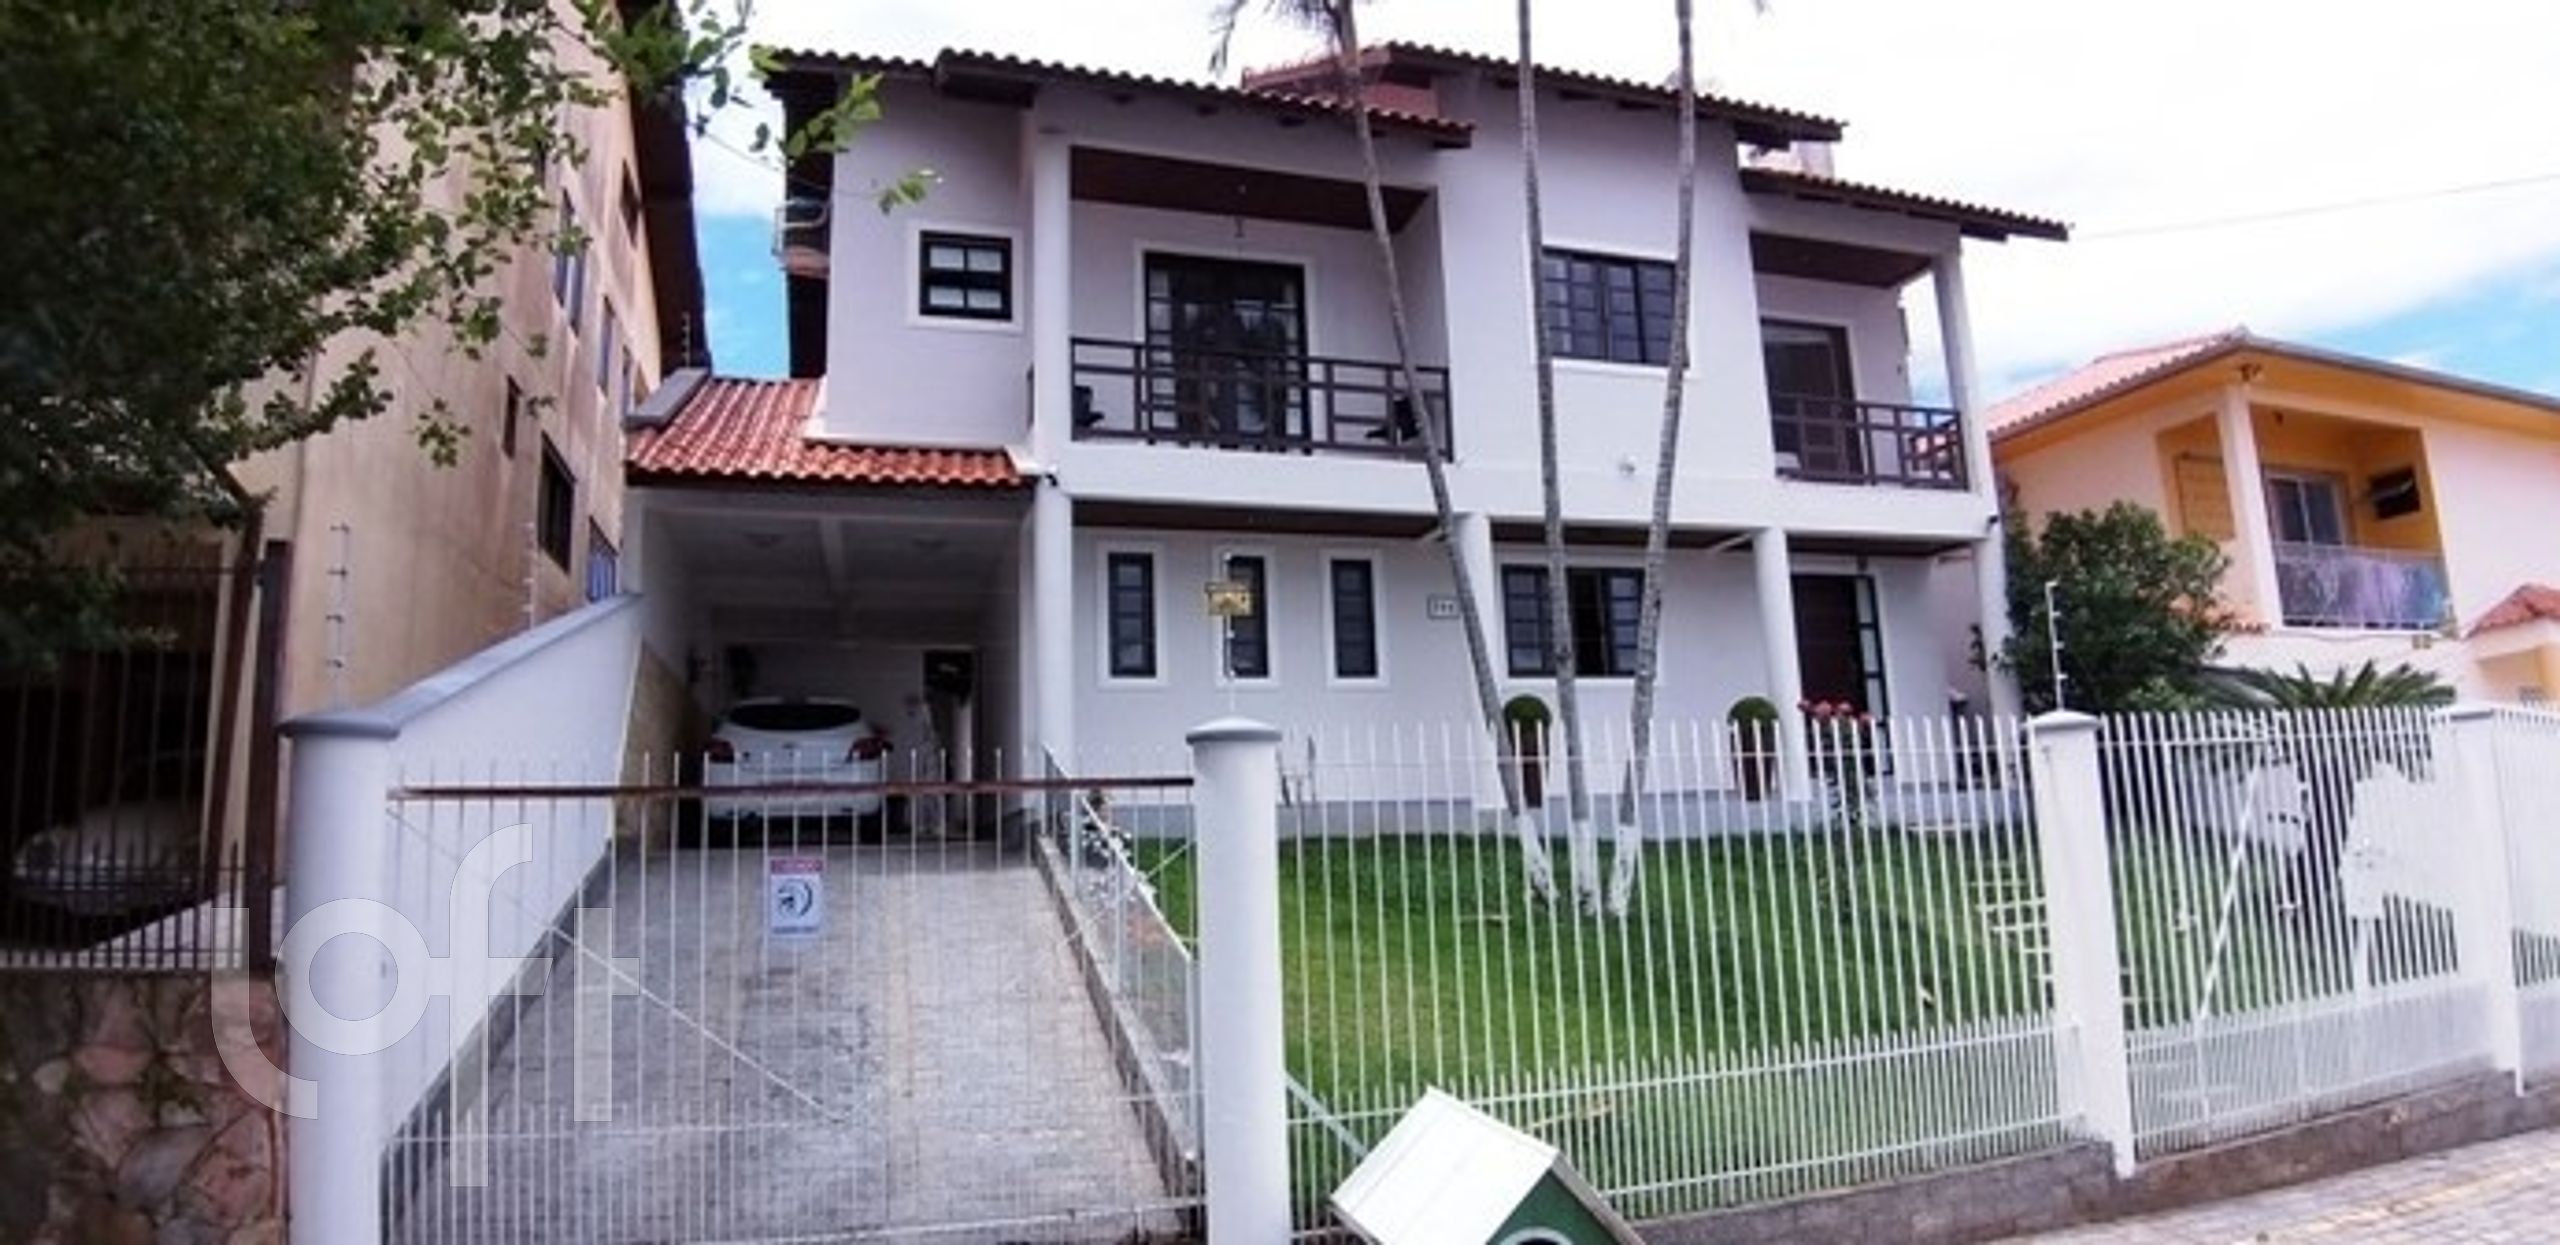 VENDA &#8211; Casa de 3 quartos no bairro Jardim Atlântico, Florianópolis &#8211; PUzfhhl3